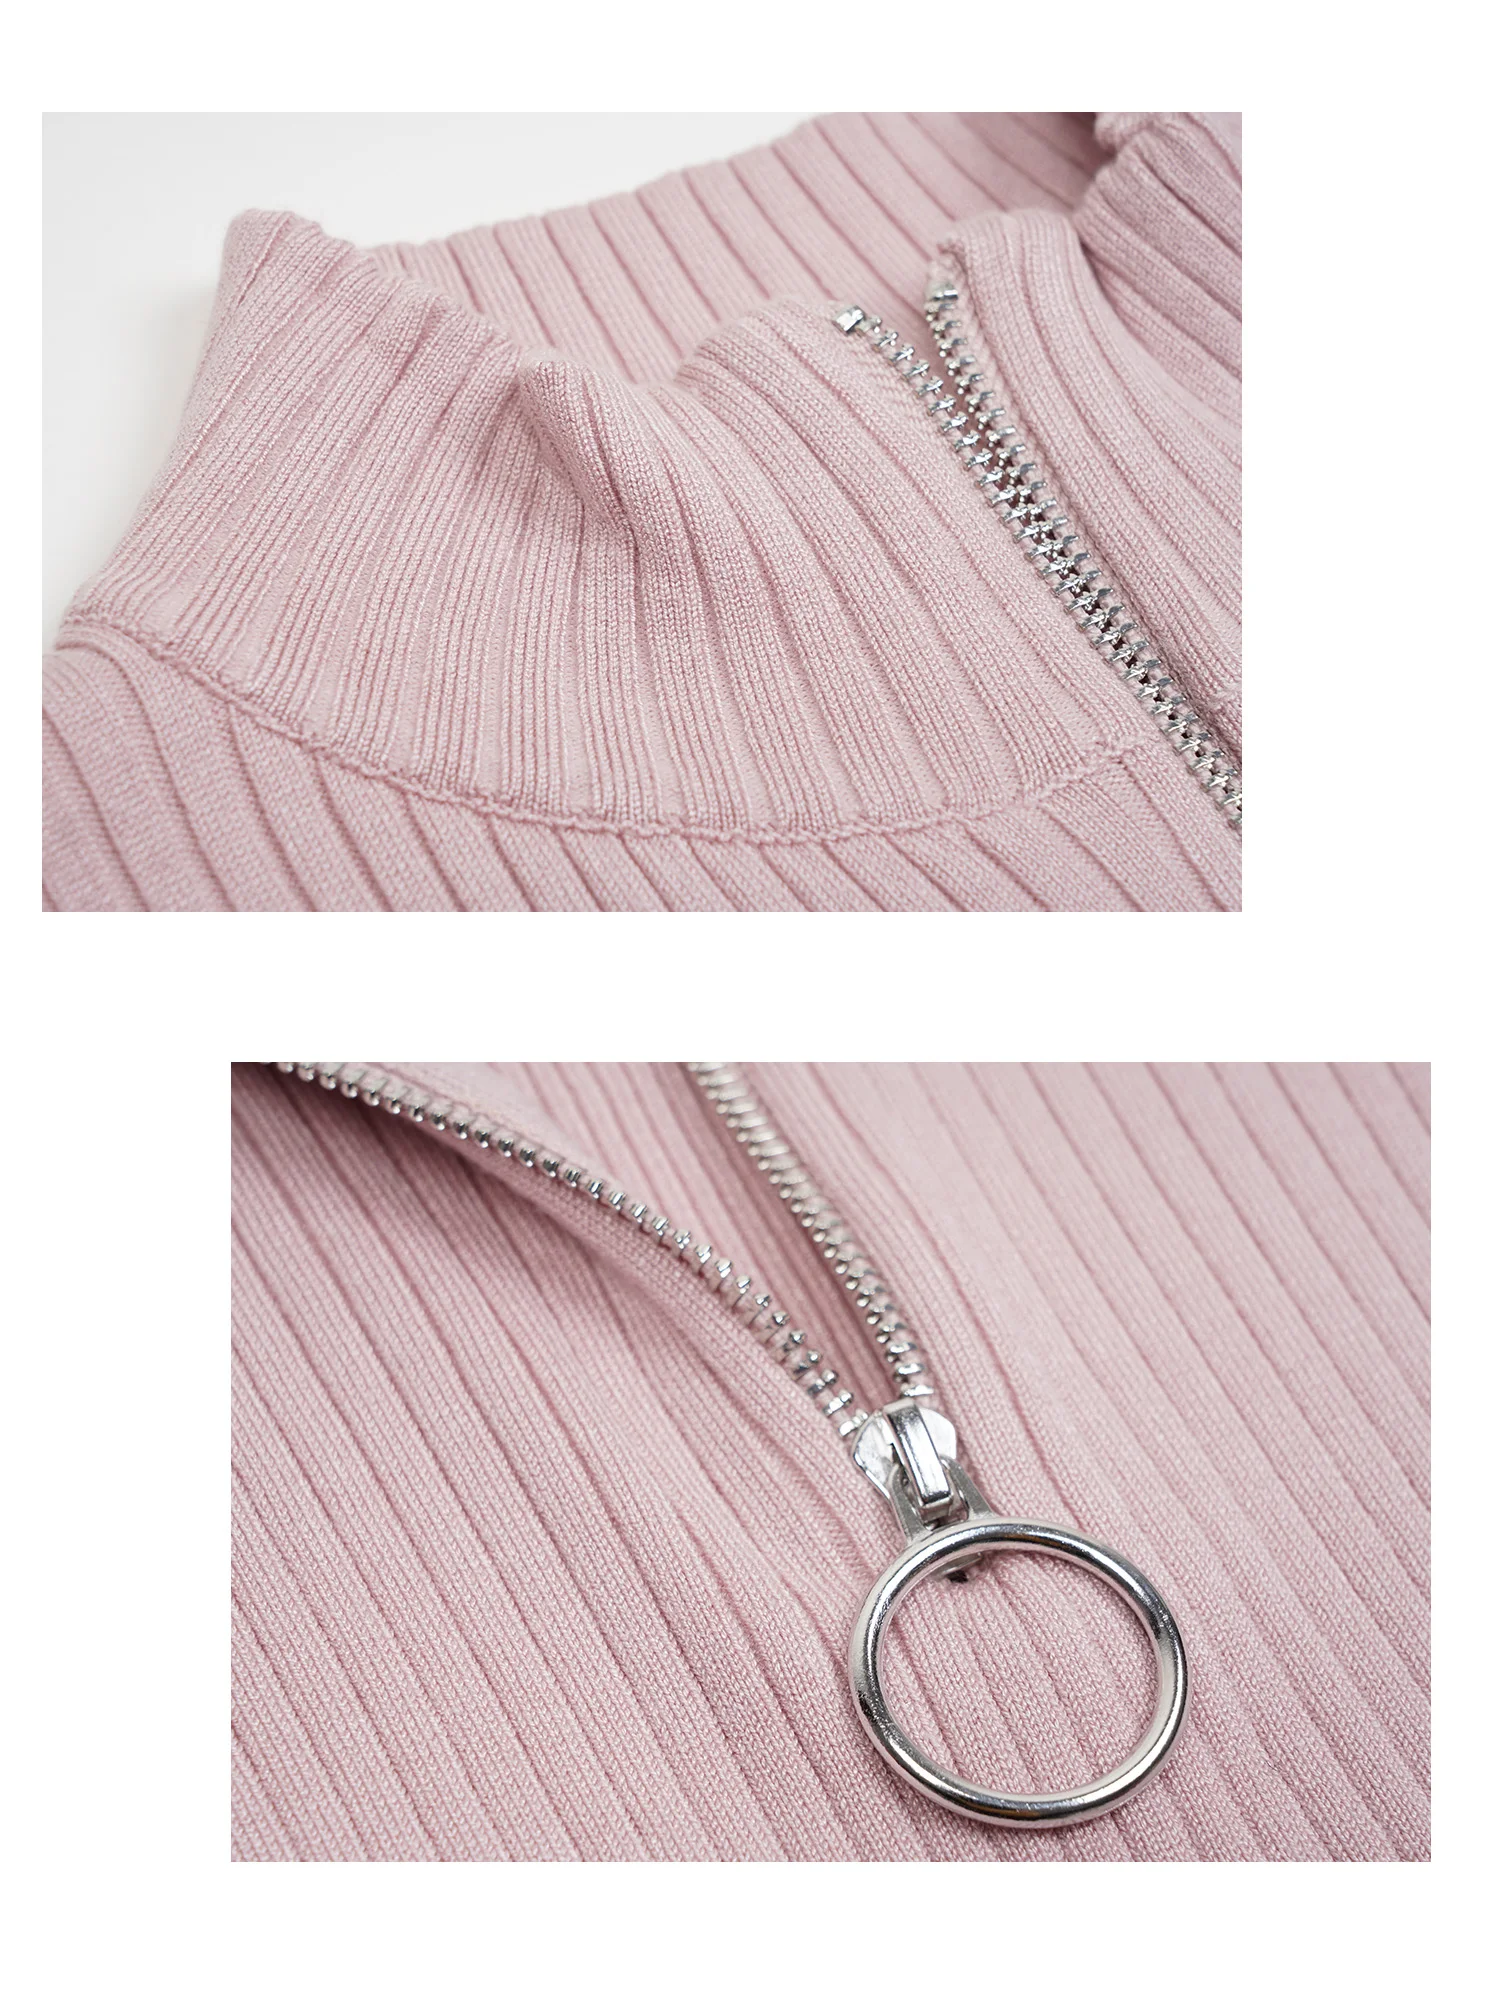 Кроп-топ на молнии женский свитер с ложным воротником вязаный пуловер в рубчик